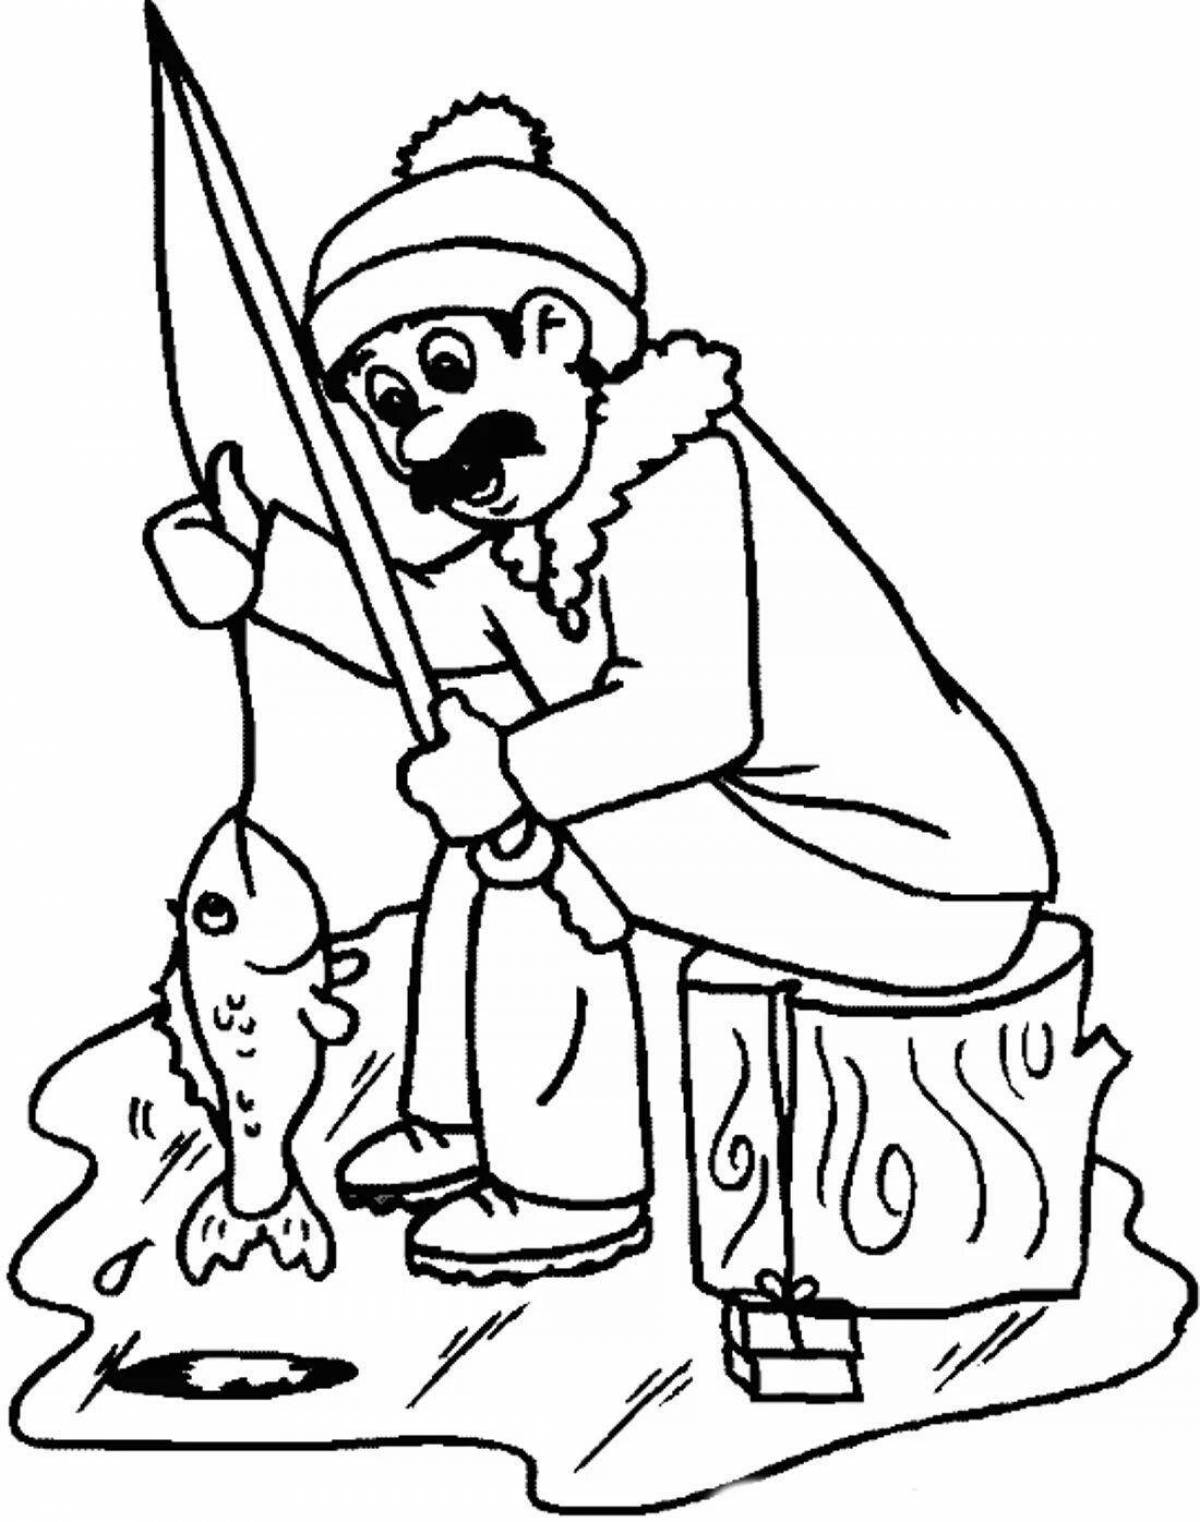 Зимняя рыбалка для детей - полезная информация для начинающих